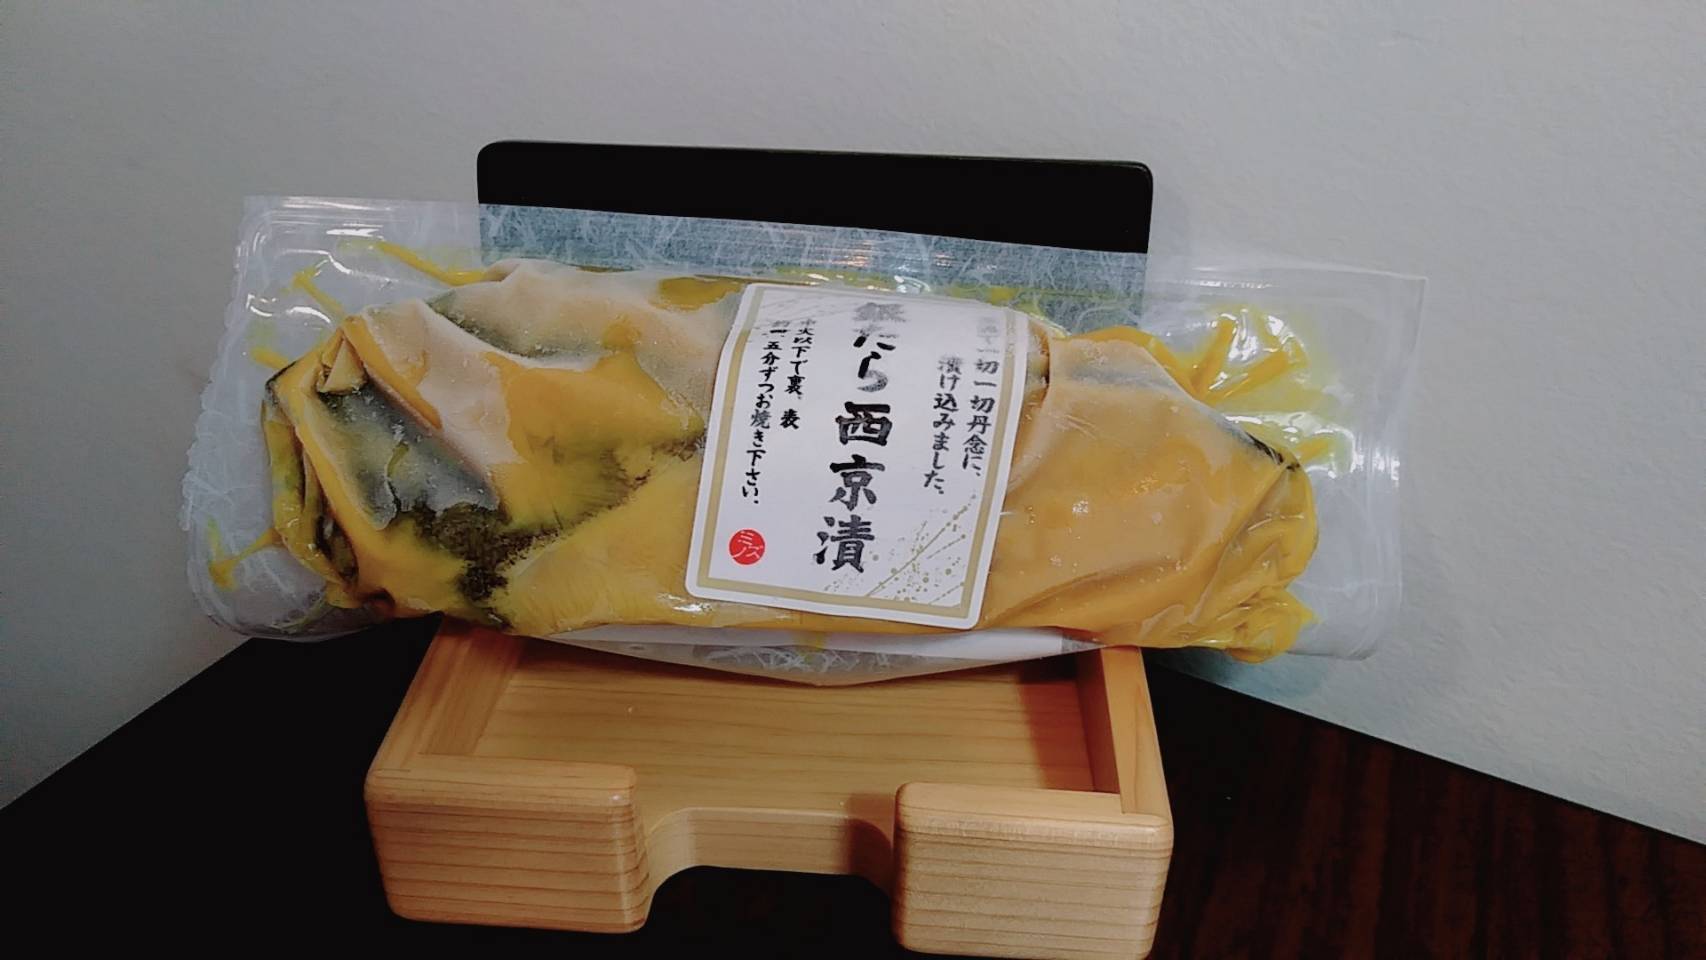 "Gin-dara"  Kyoto-miso style (Black cod)　 成城石井御用達！ 厚切り　銀ダラ西京漬